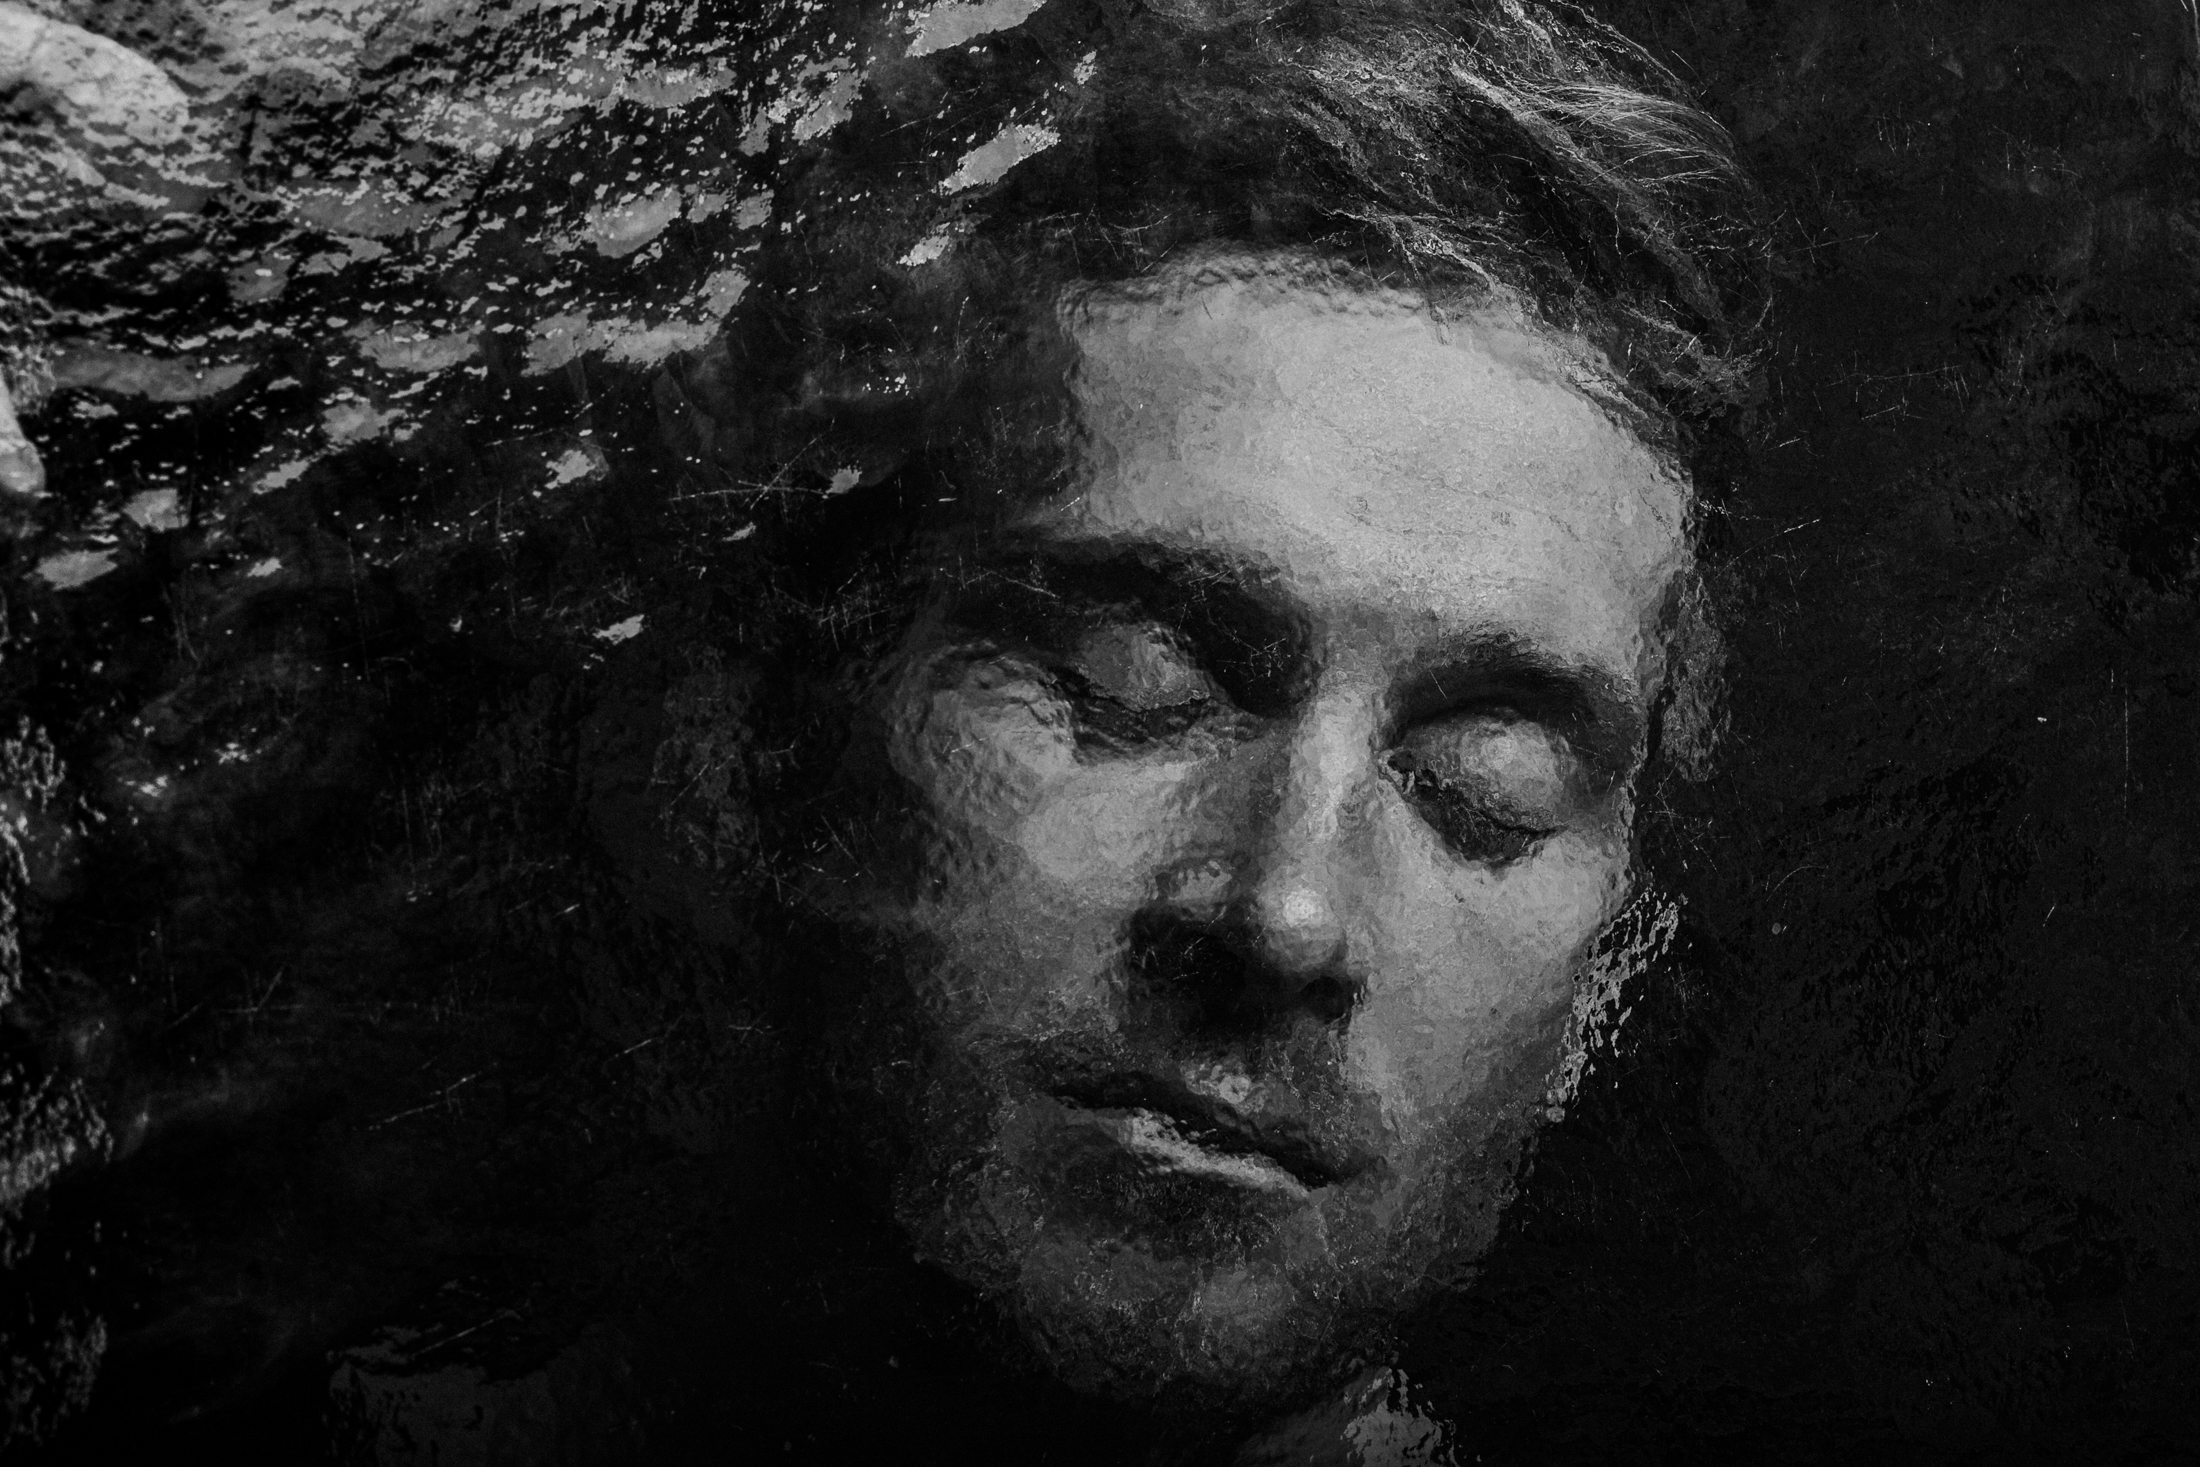 Samuel Koch mit geschlossenen Augen hinter einer Scheibe in schwarzweiss